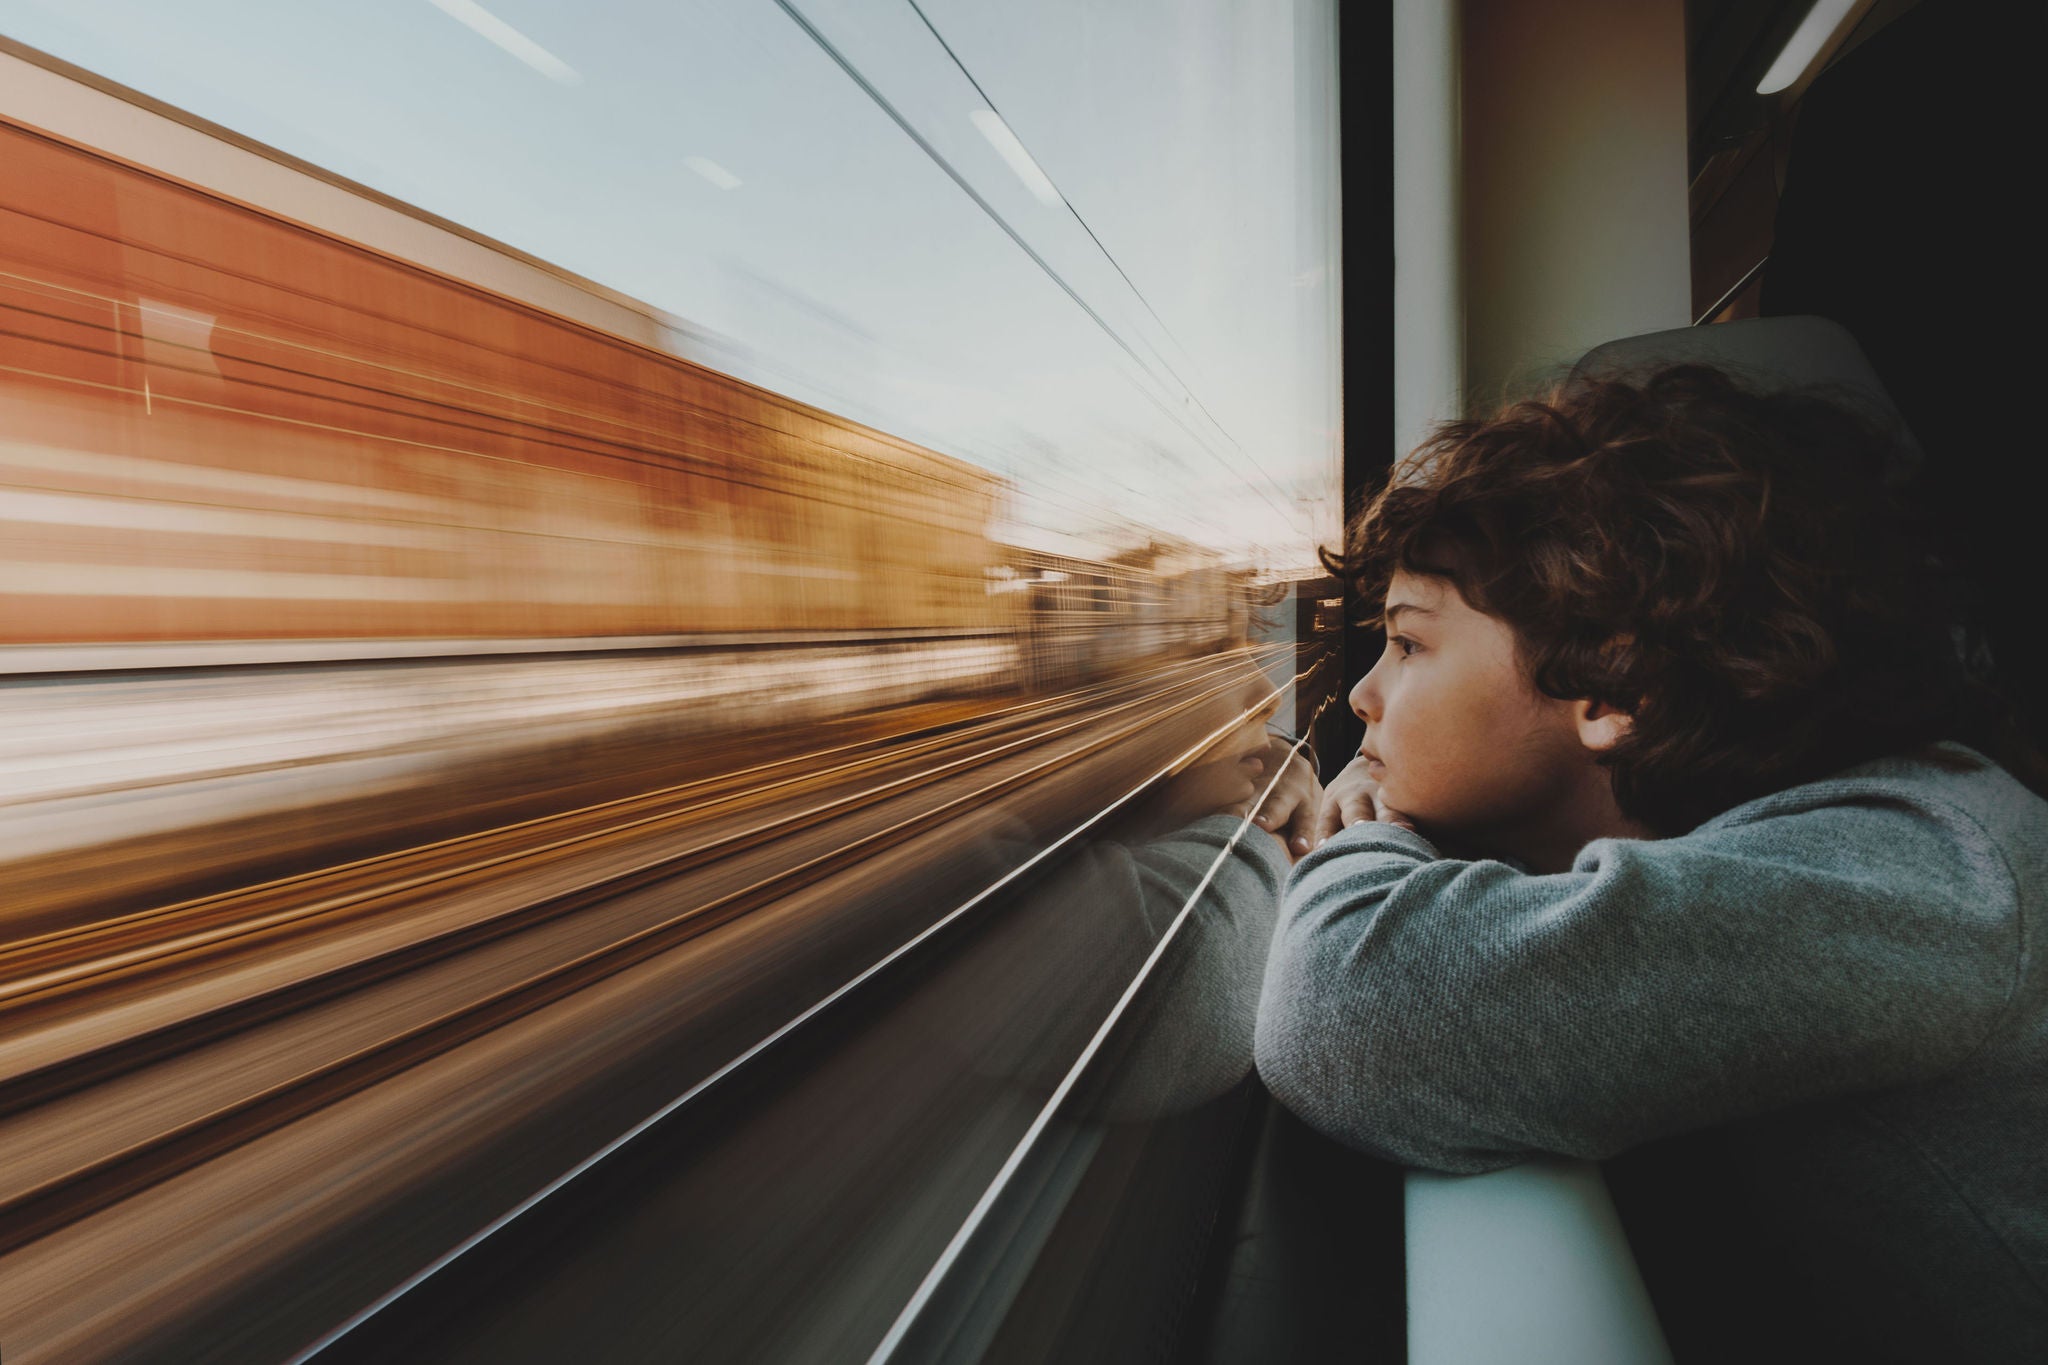 Boy leaning on a window sill looking through a train window